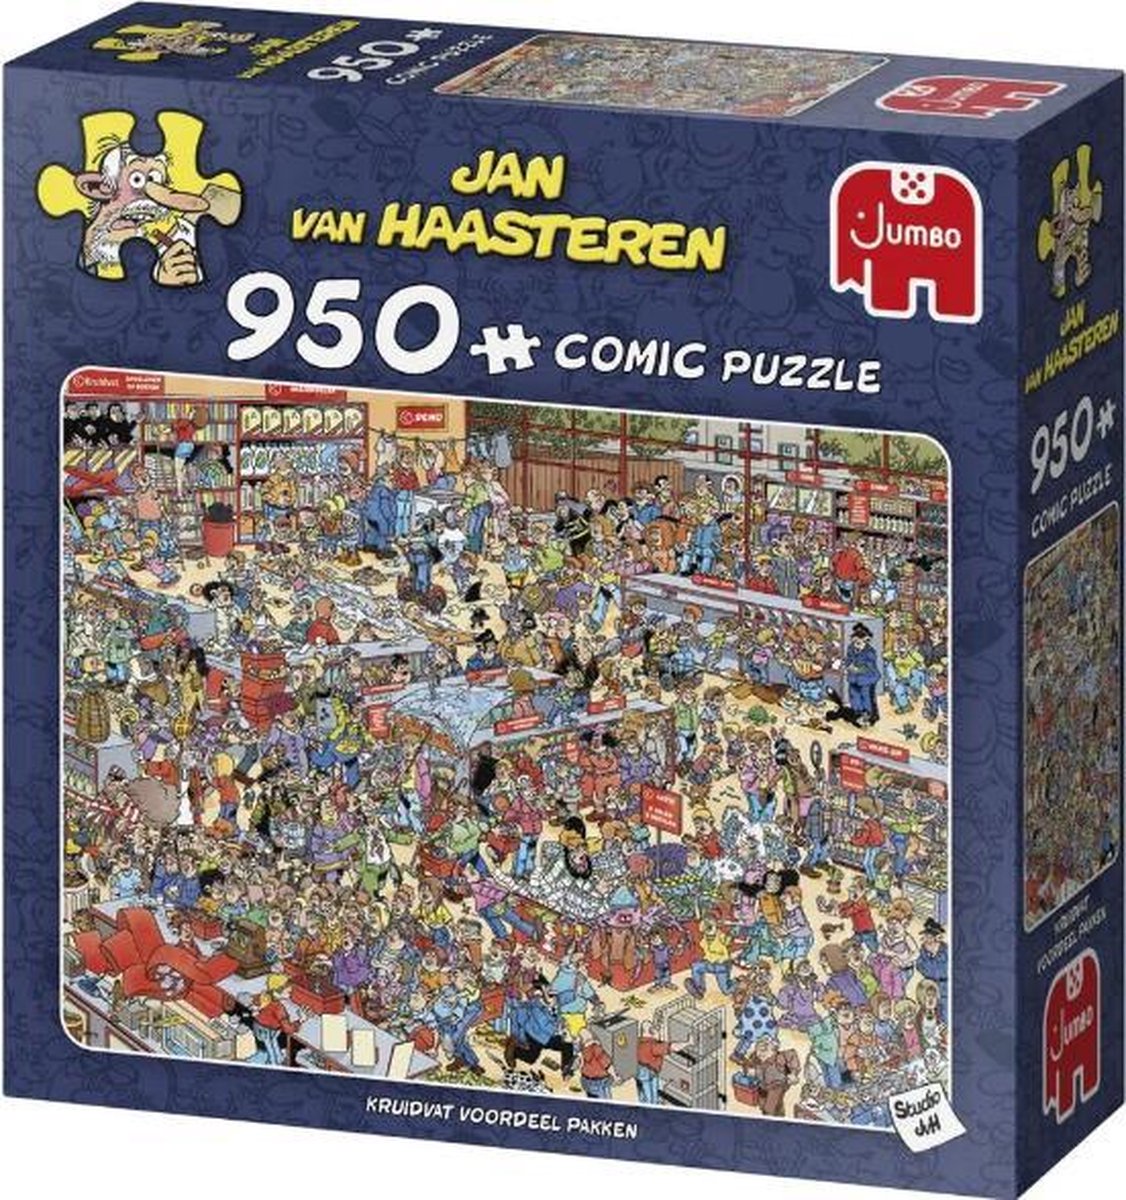 Beyond Reciteren Keer terug Jan van Haasteren Kruidvat Voordeel Pakken puzzel - 950 stukjes | bol.com